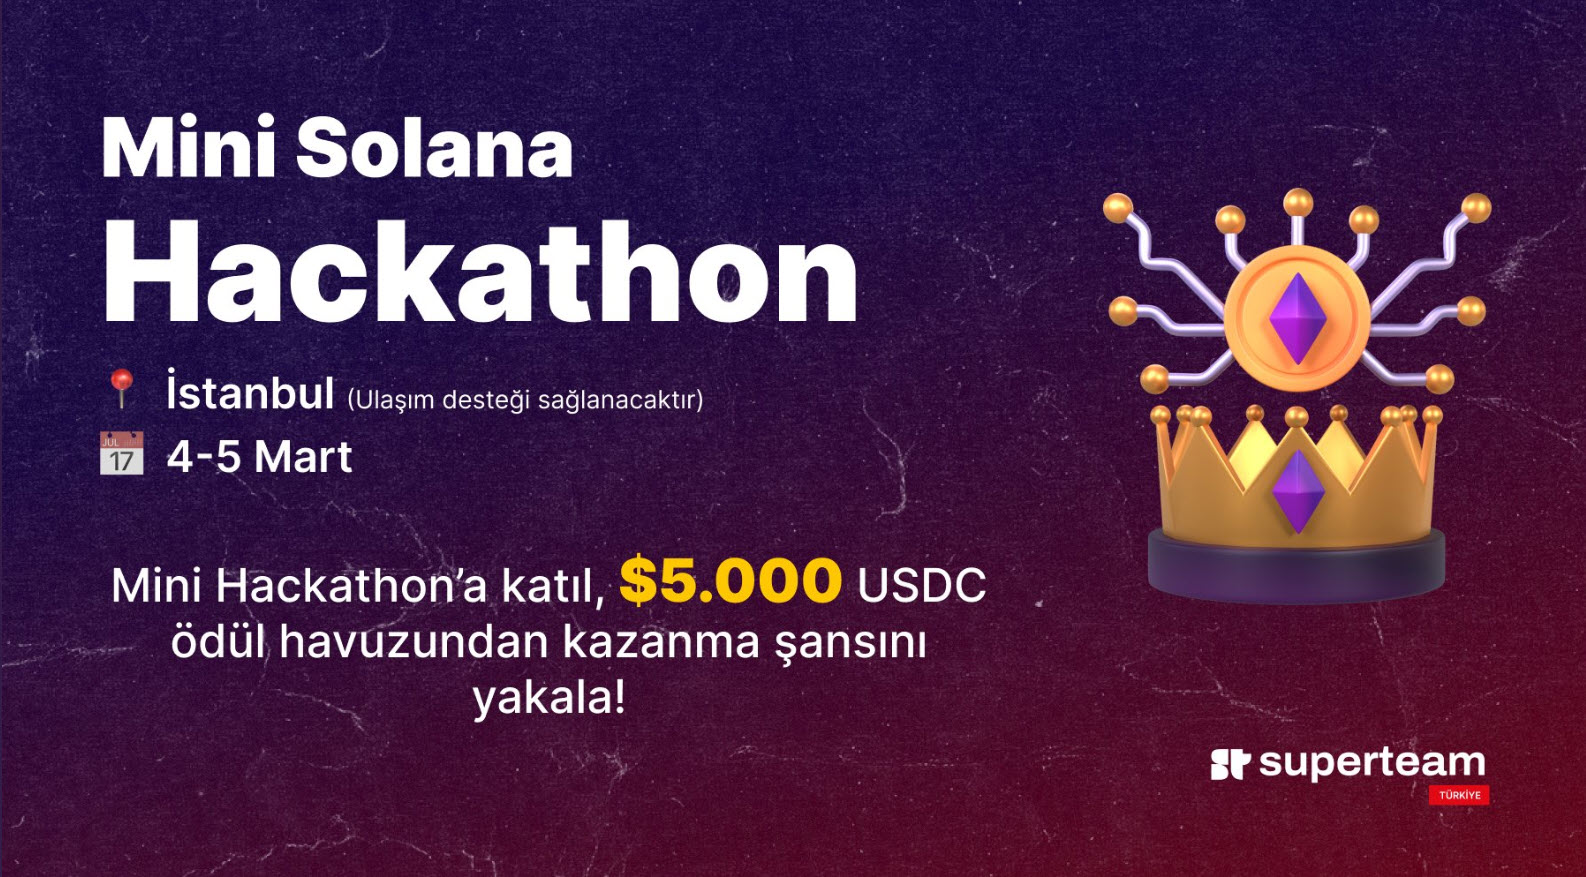 Mini Solana Hackathon'a katılarak kendini ispatlamak ve ödüller kazanmak ister misin? 